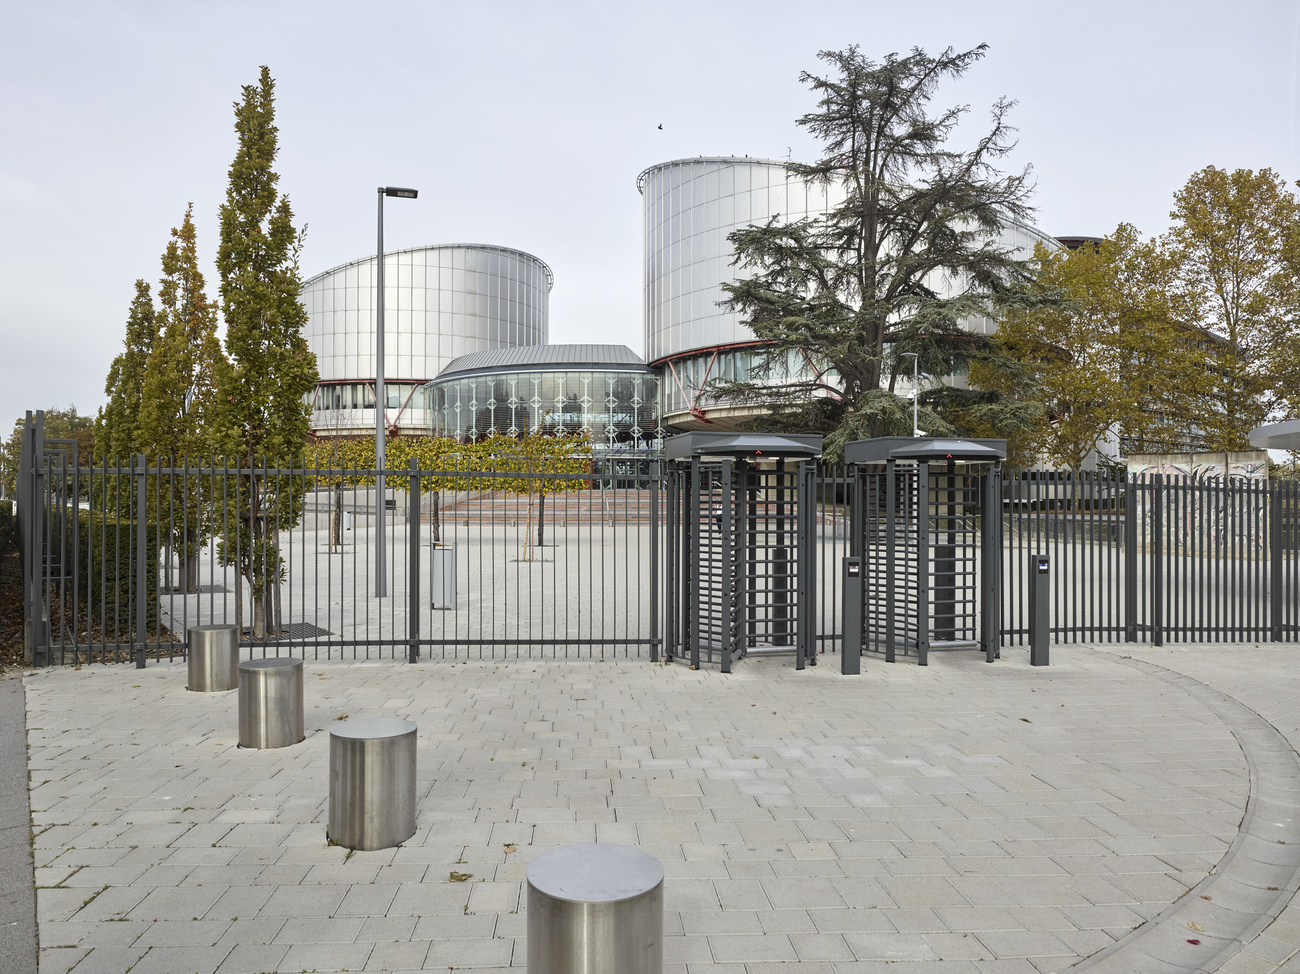 المحكمة الأوروبية لحقوق الإنسان في ستراسبورغ، فرنسا.